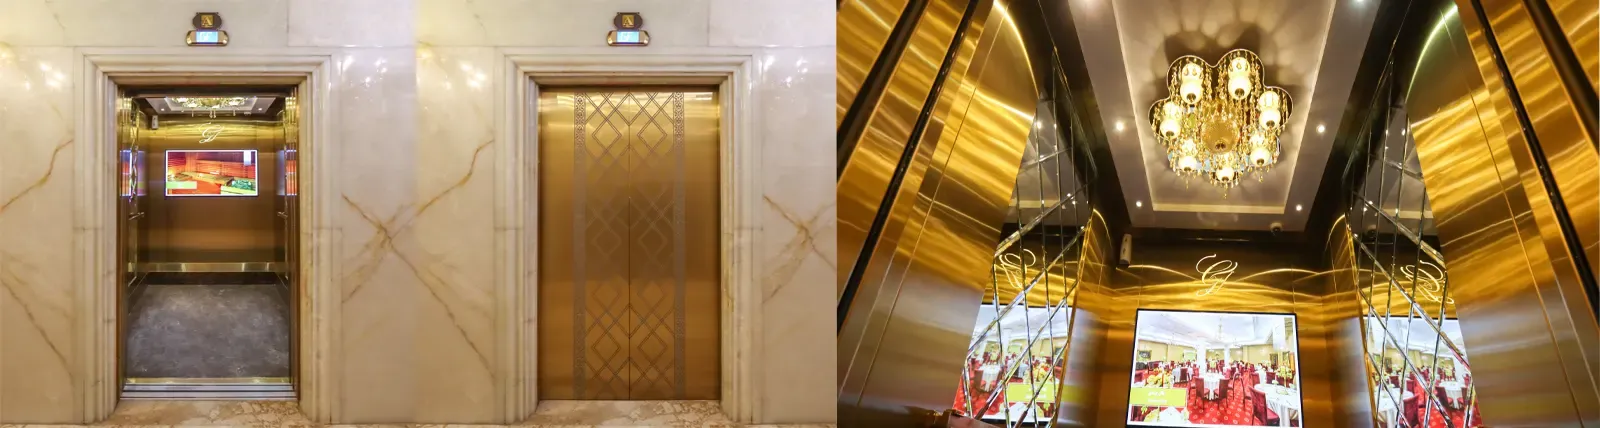 آسانسور هتل قصر طلایی